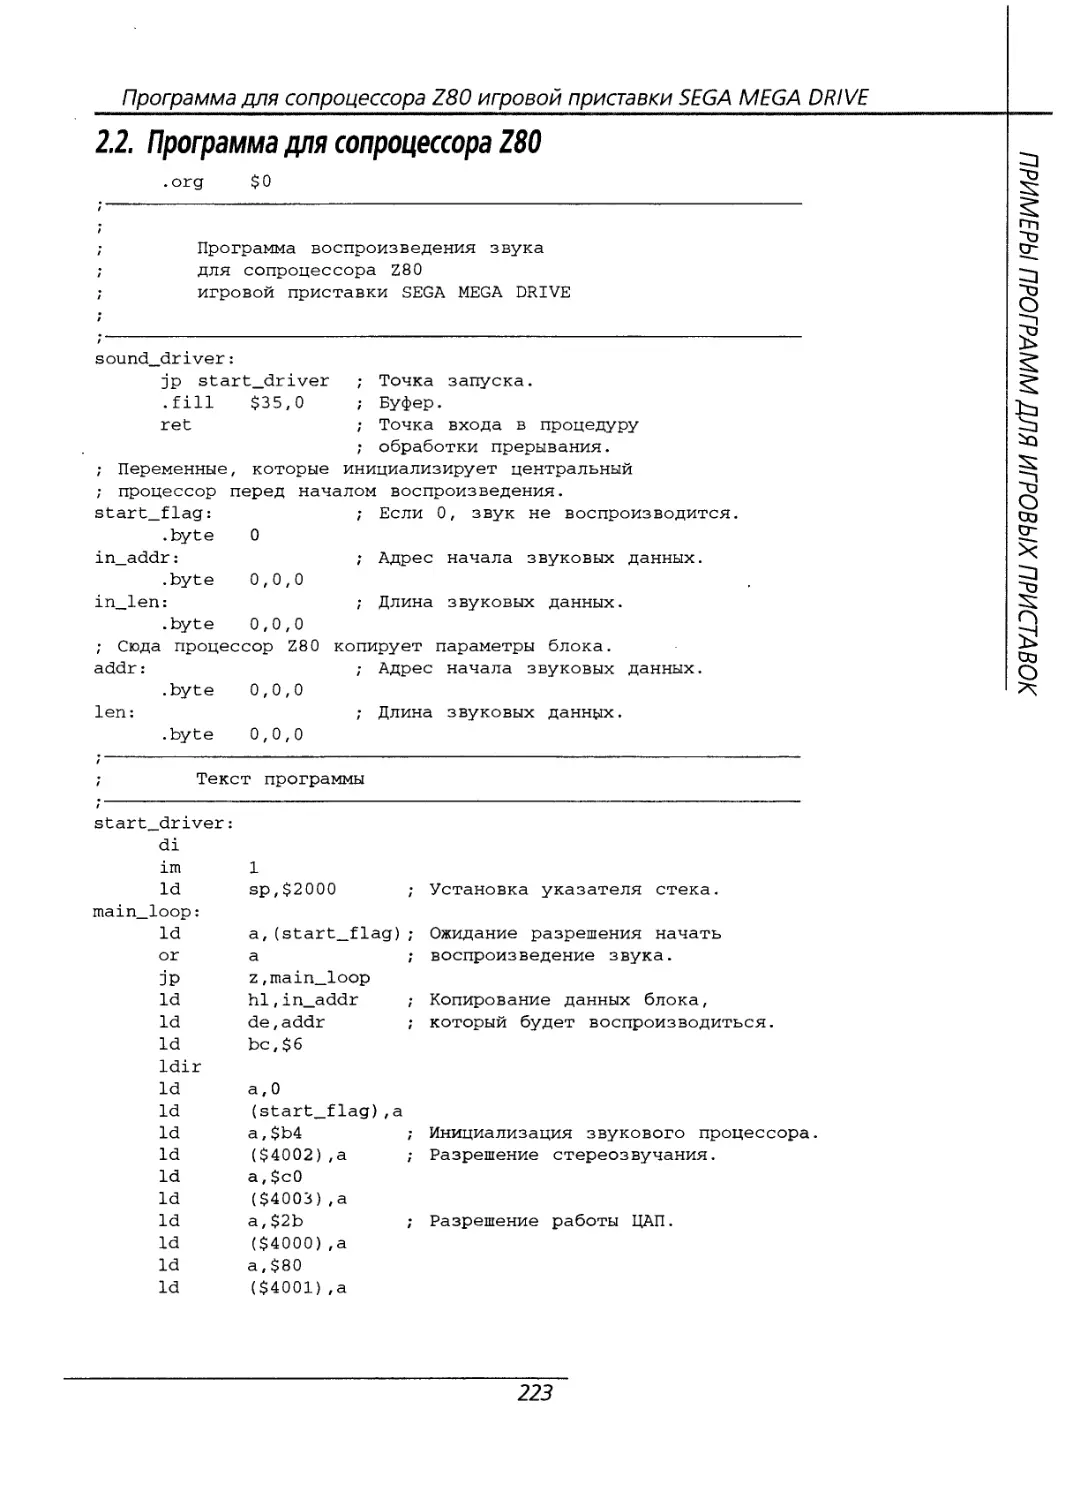 2.2 Программа для сопроцессора Z80